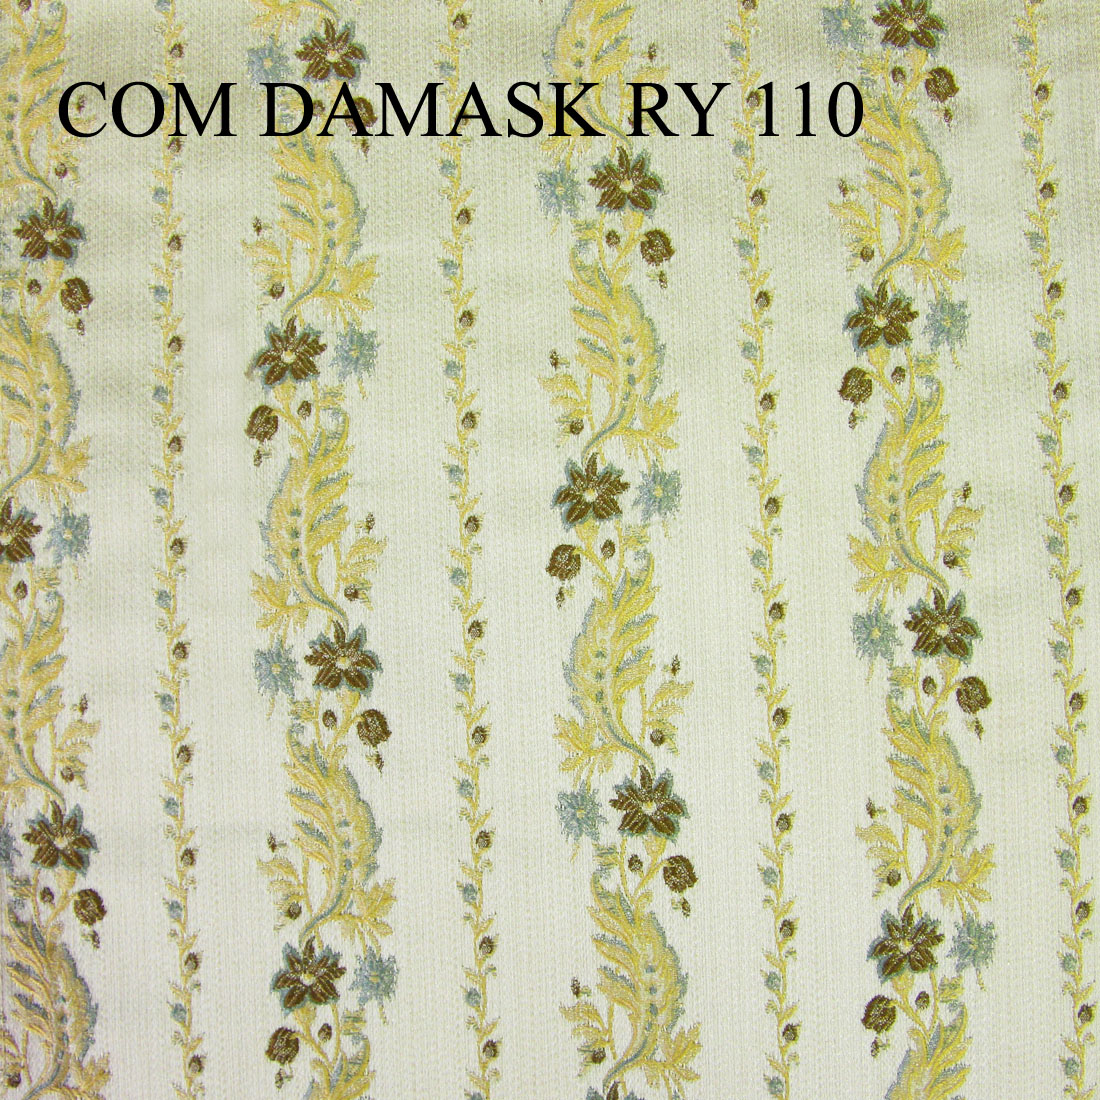 COM DAMASK RY 110